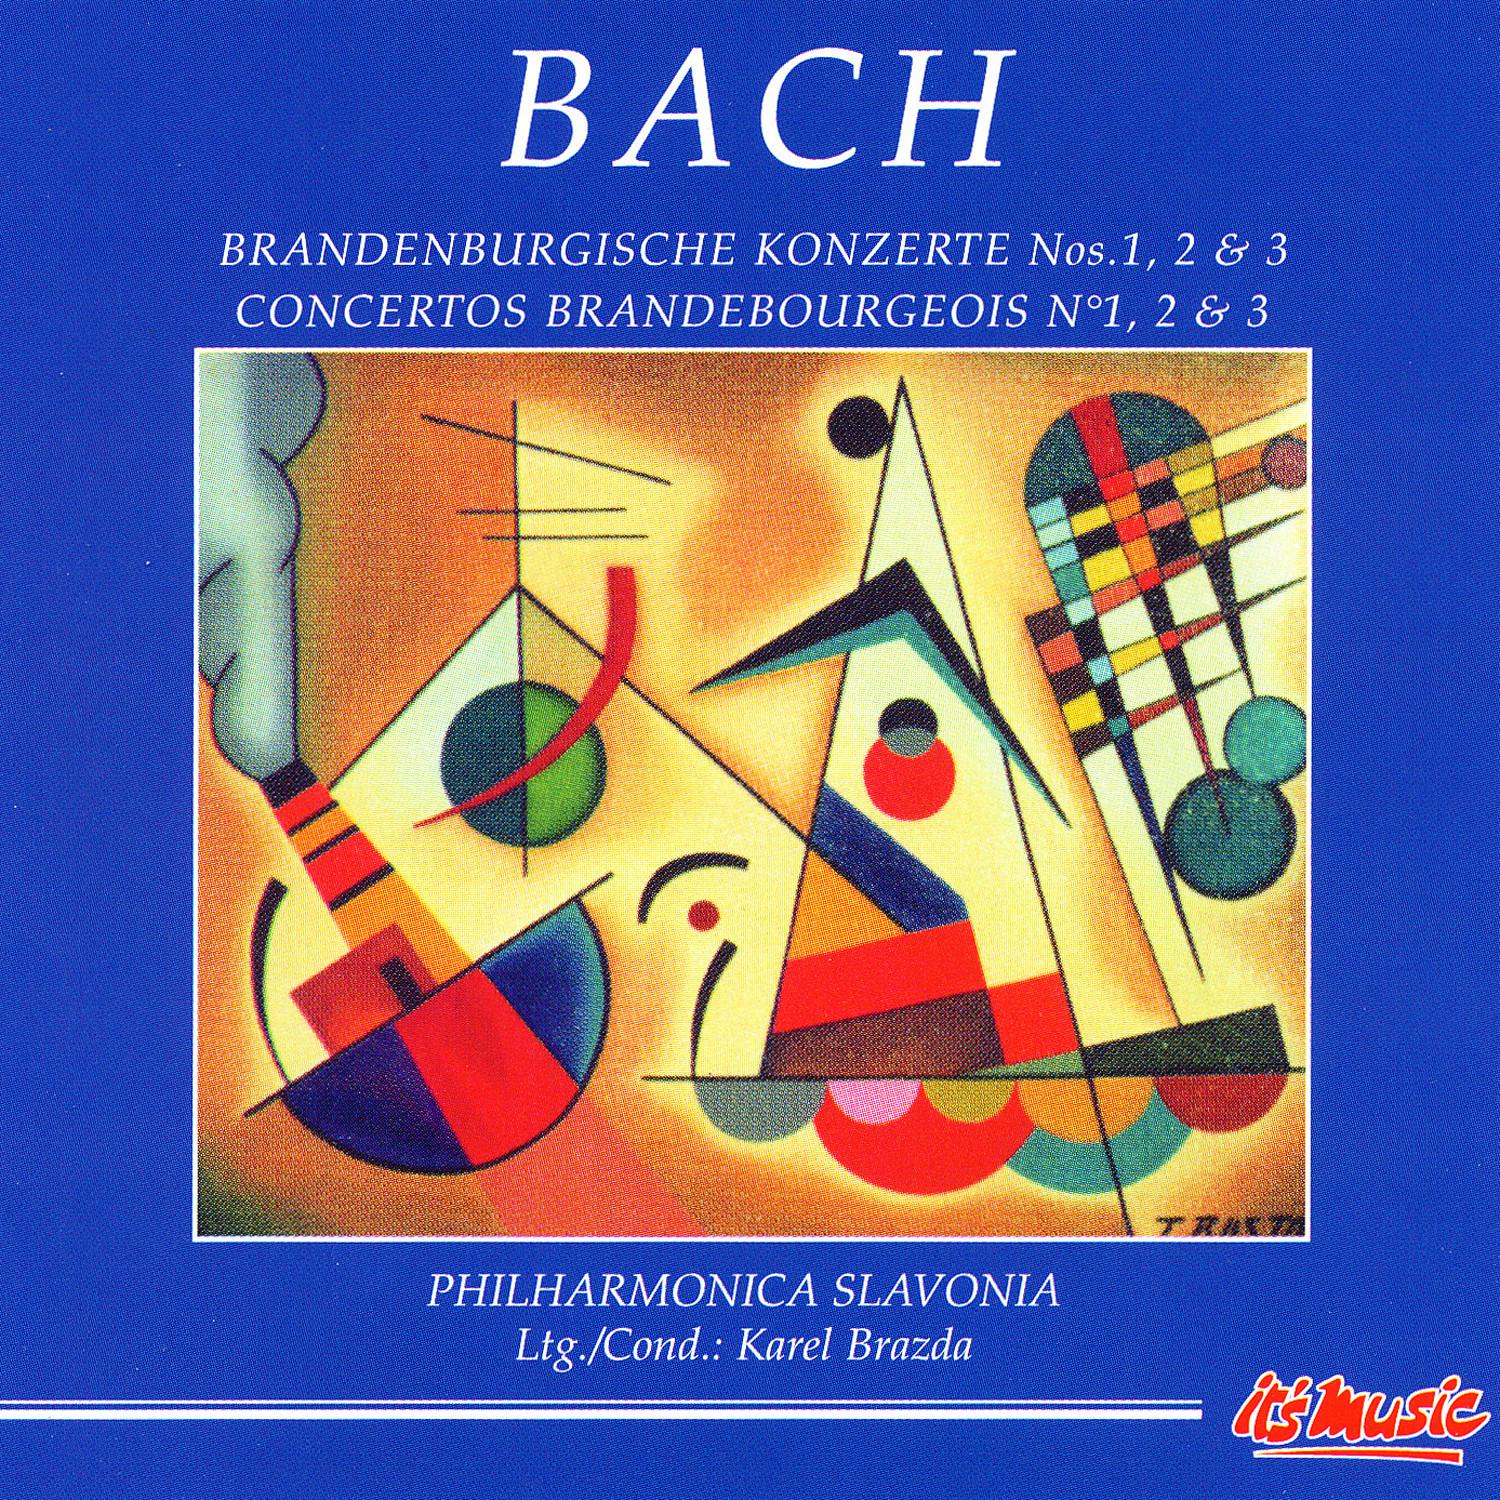 Brandenburg Concerto No. 1 in F major IV. Minuetto